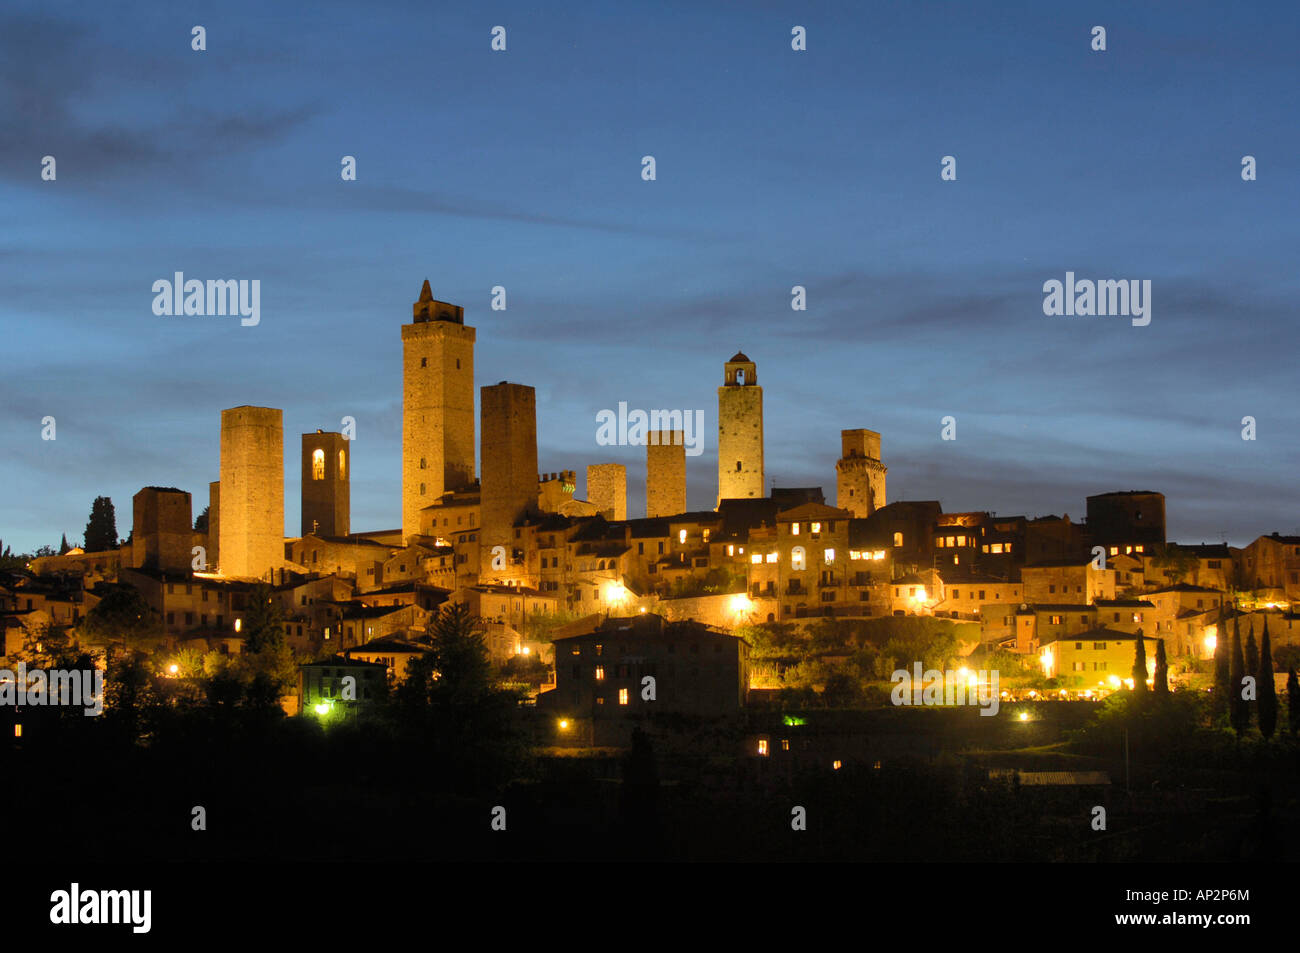 Panorama d'une petite ville médiévale de nuit, San Gimignano, Toscane, Italie Banque D'Images